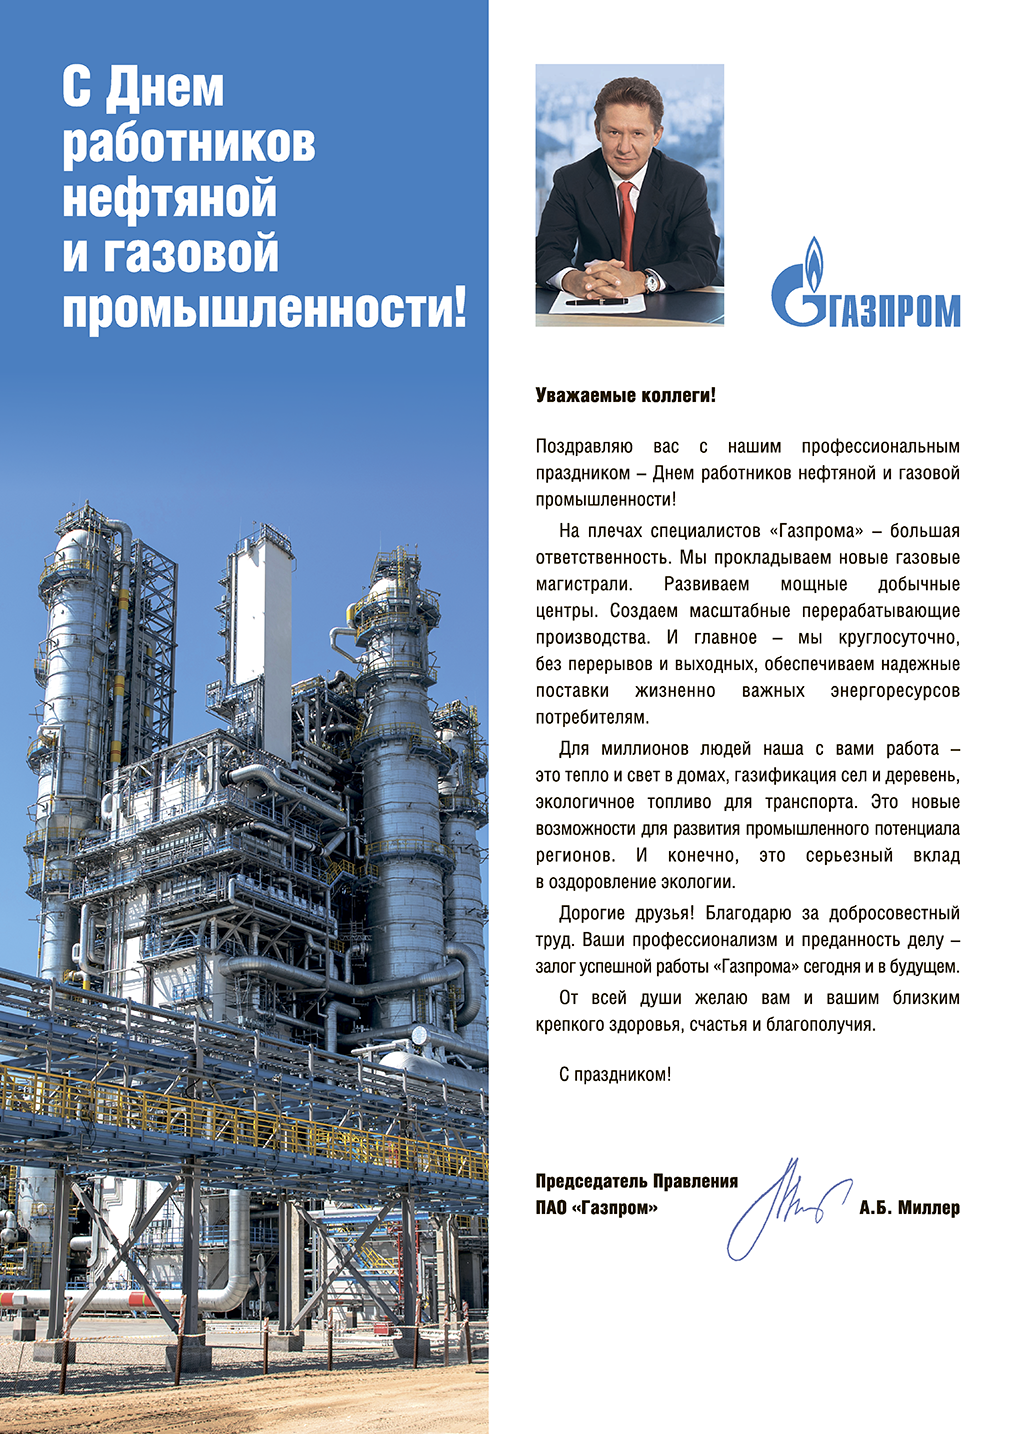 Поздравление с Днем работников нефтяной и газовой промышленности Председателя Правления ПАО "Газпром" Алексея Миллера